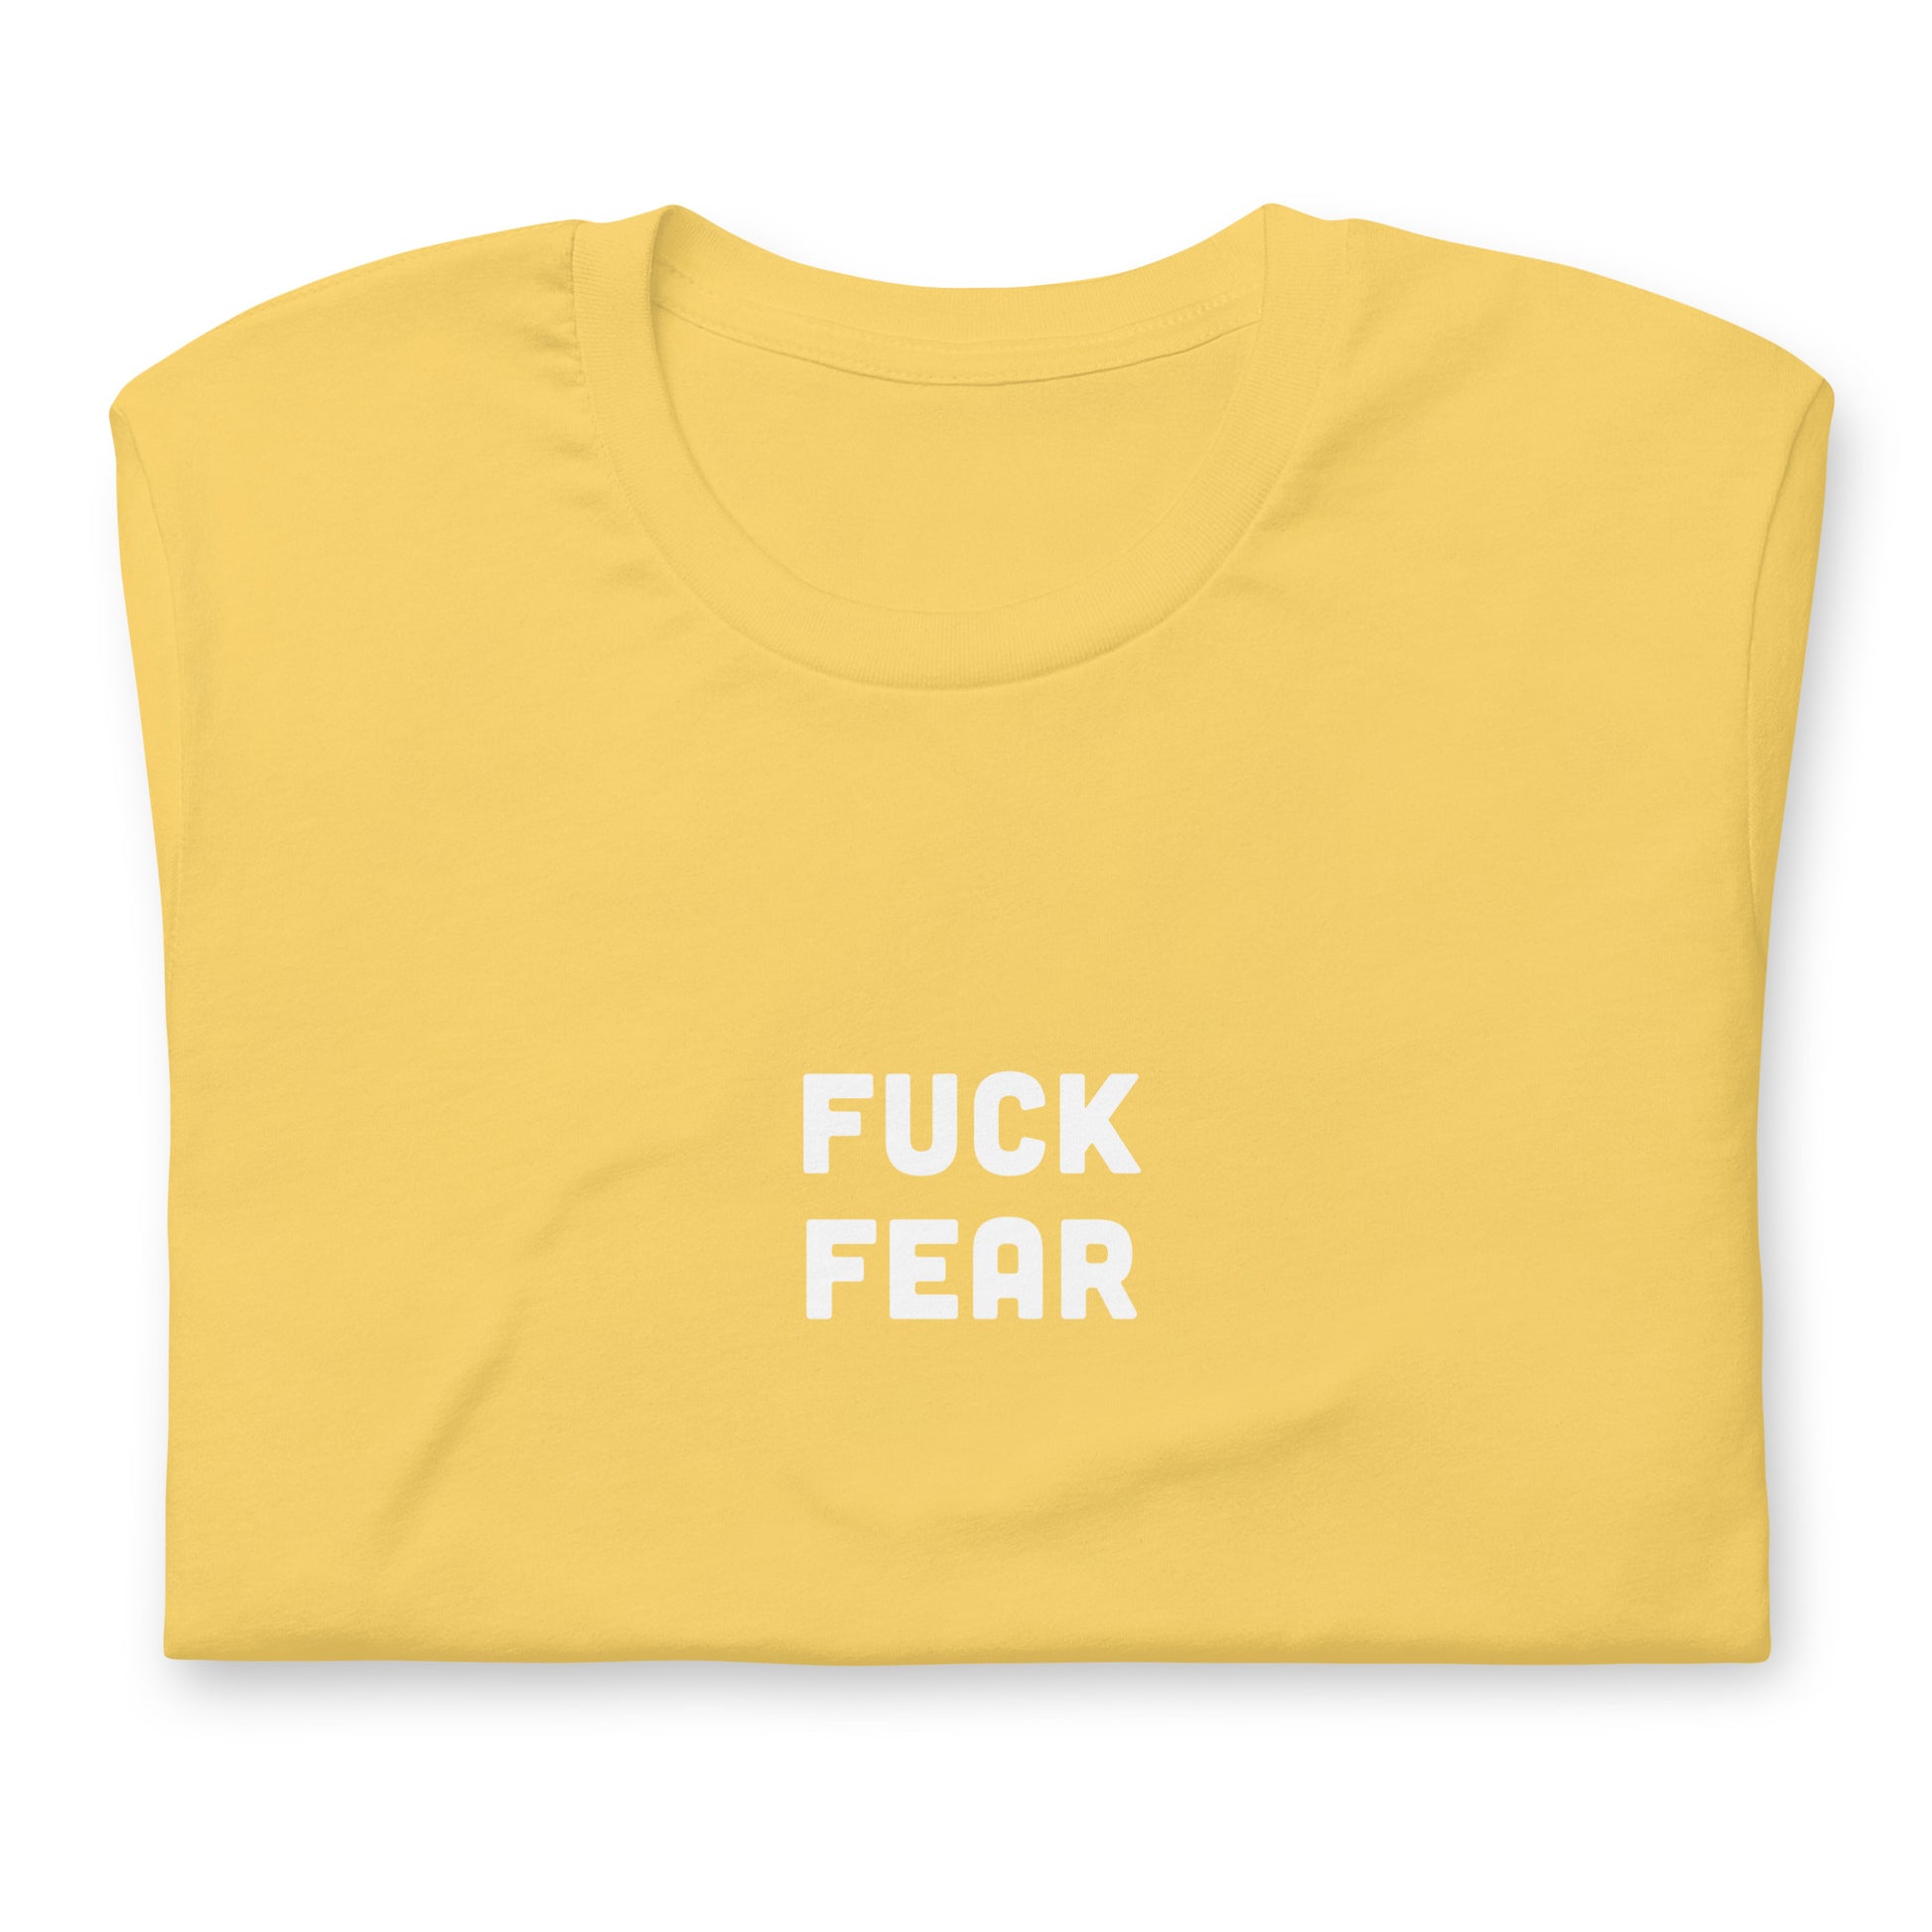 Fuck Fear T-Shirt Size 2XL Color Asphalt